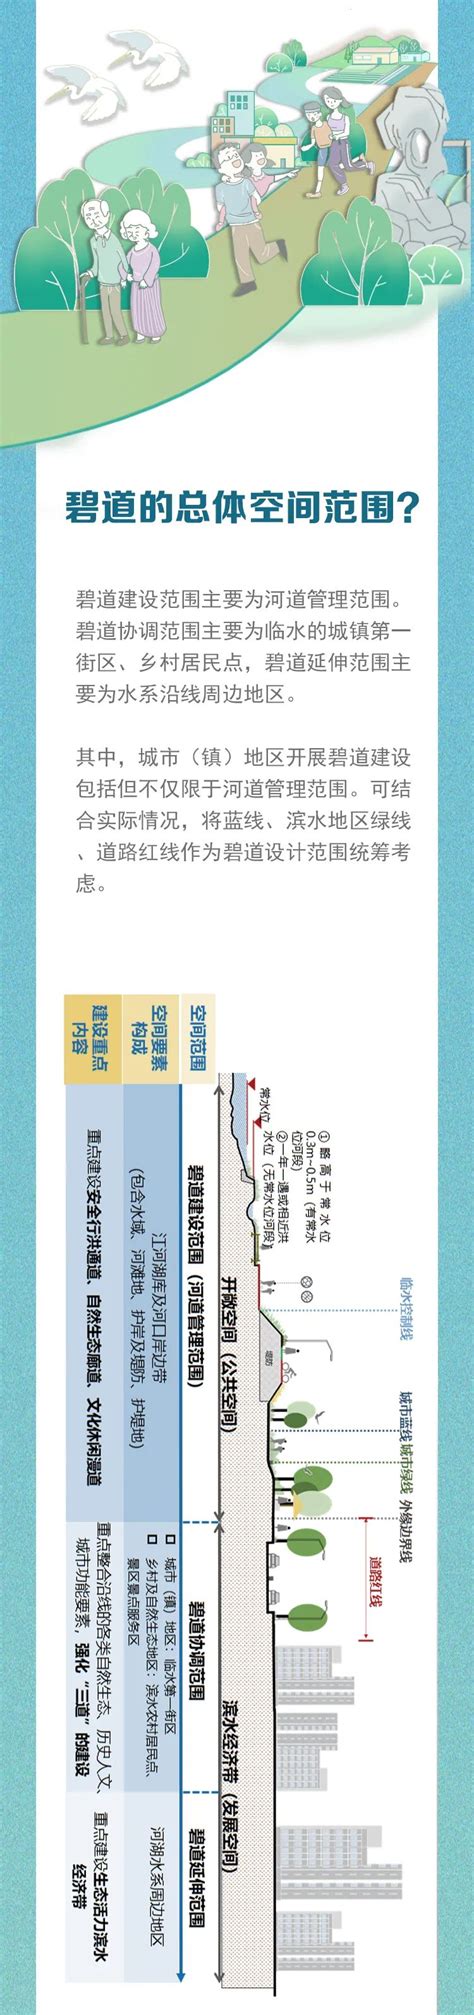 广东省水利厅 - 全网最全的广东万里碧道一图解读！！